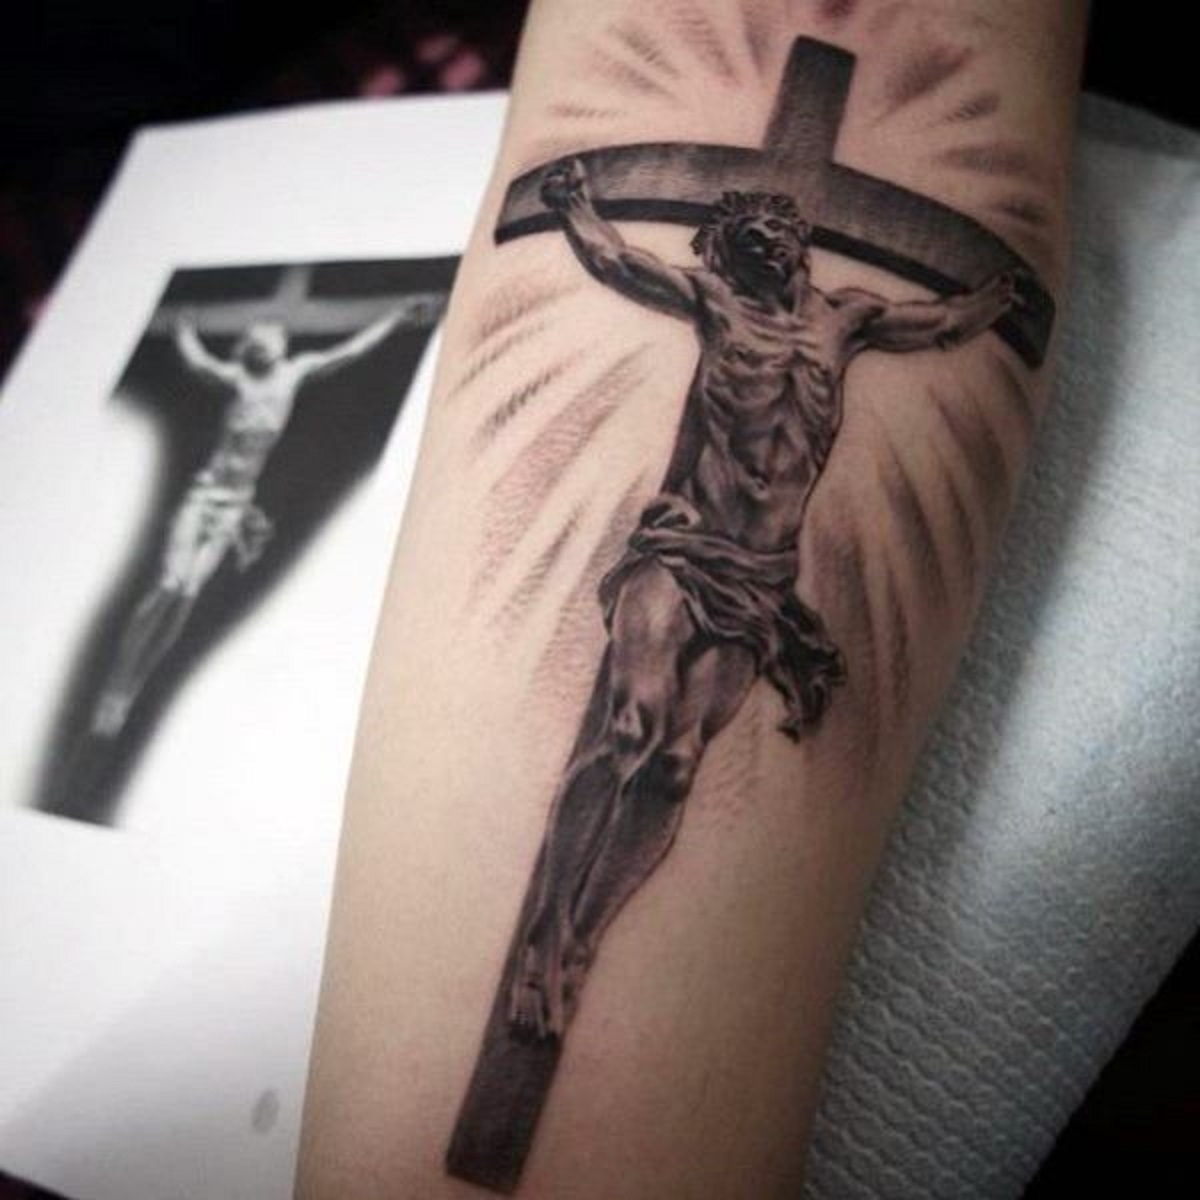 Cross symbol tattoo designs| Cách vẽ hình xăm thánh giá đẹp bằng bút bi -  YouTube